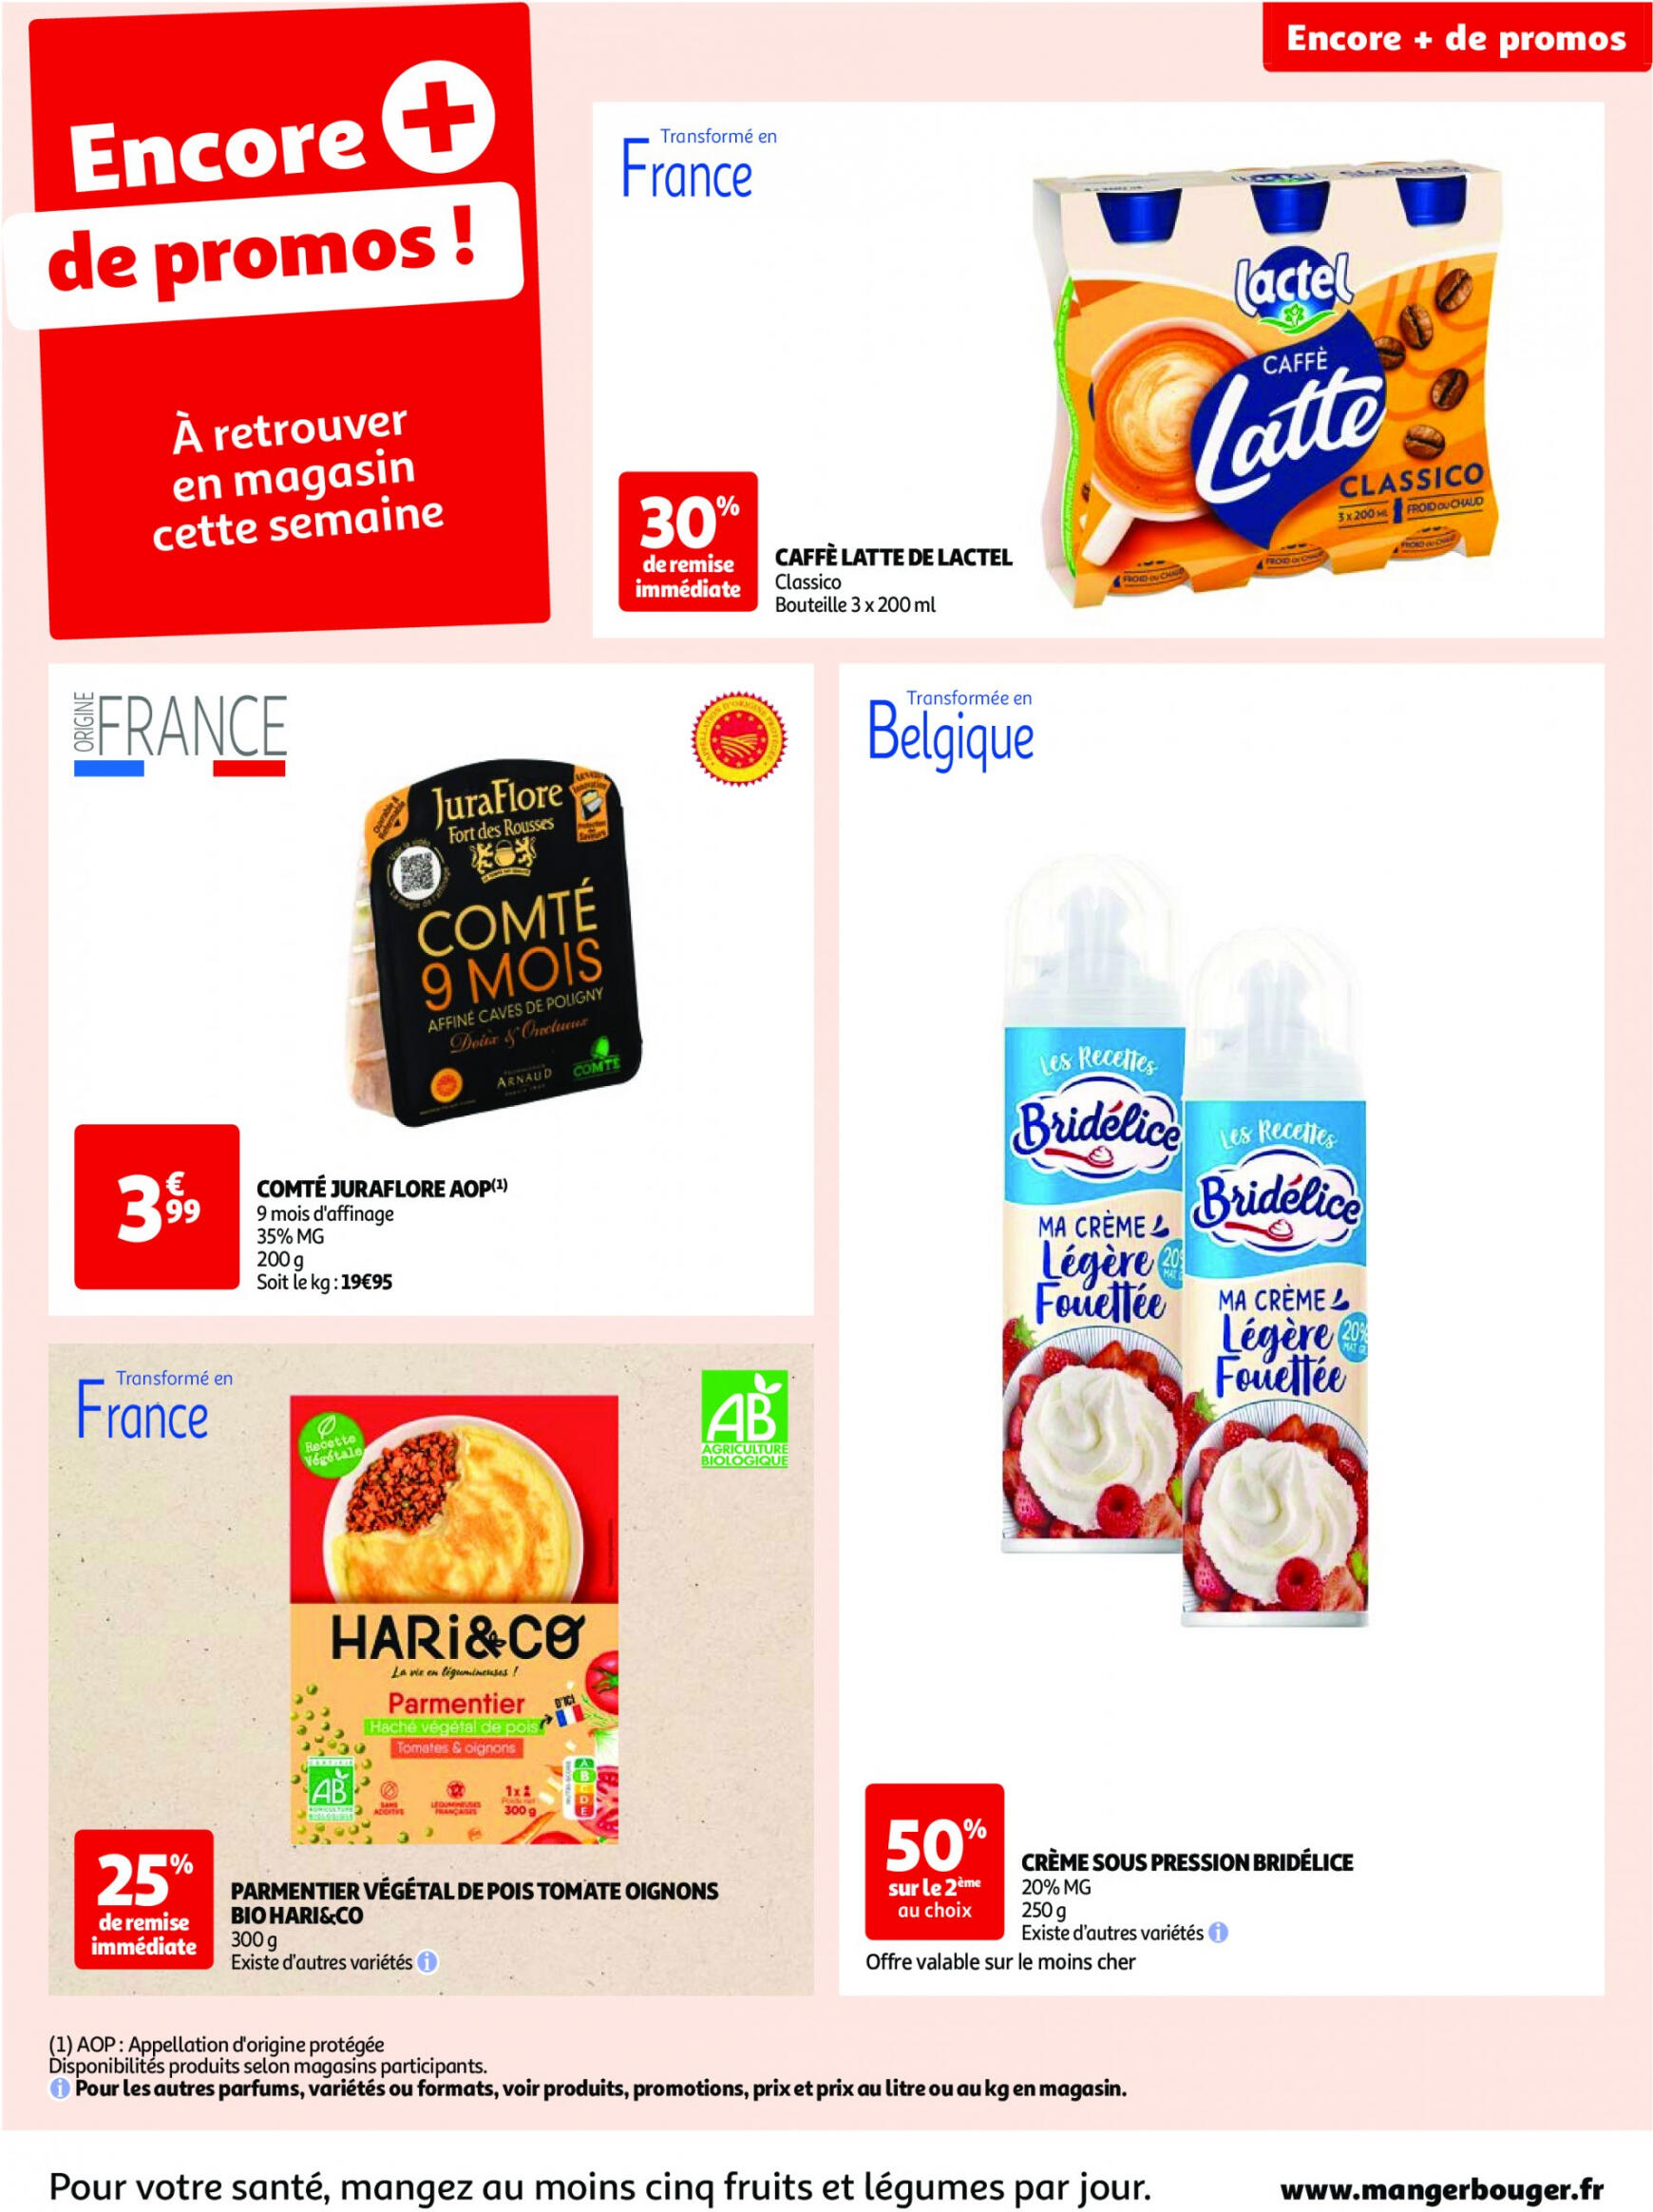 auchan - Auchan - Nos surgelés ont tout bon folder huidig 14.05. - 21.05. - page: 54